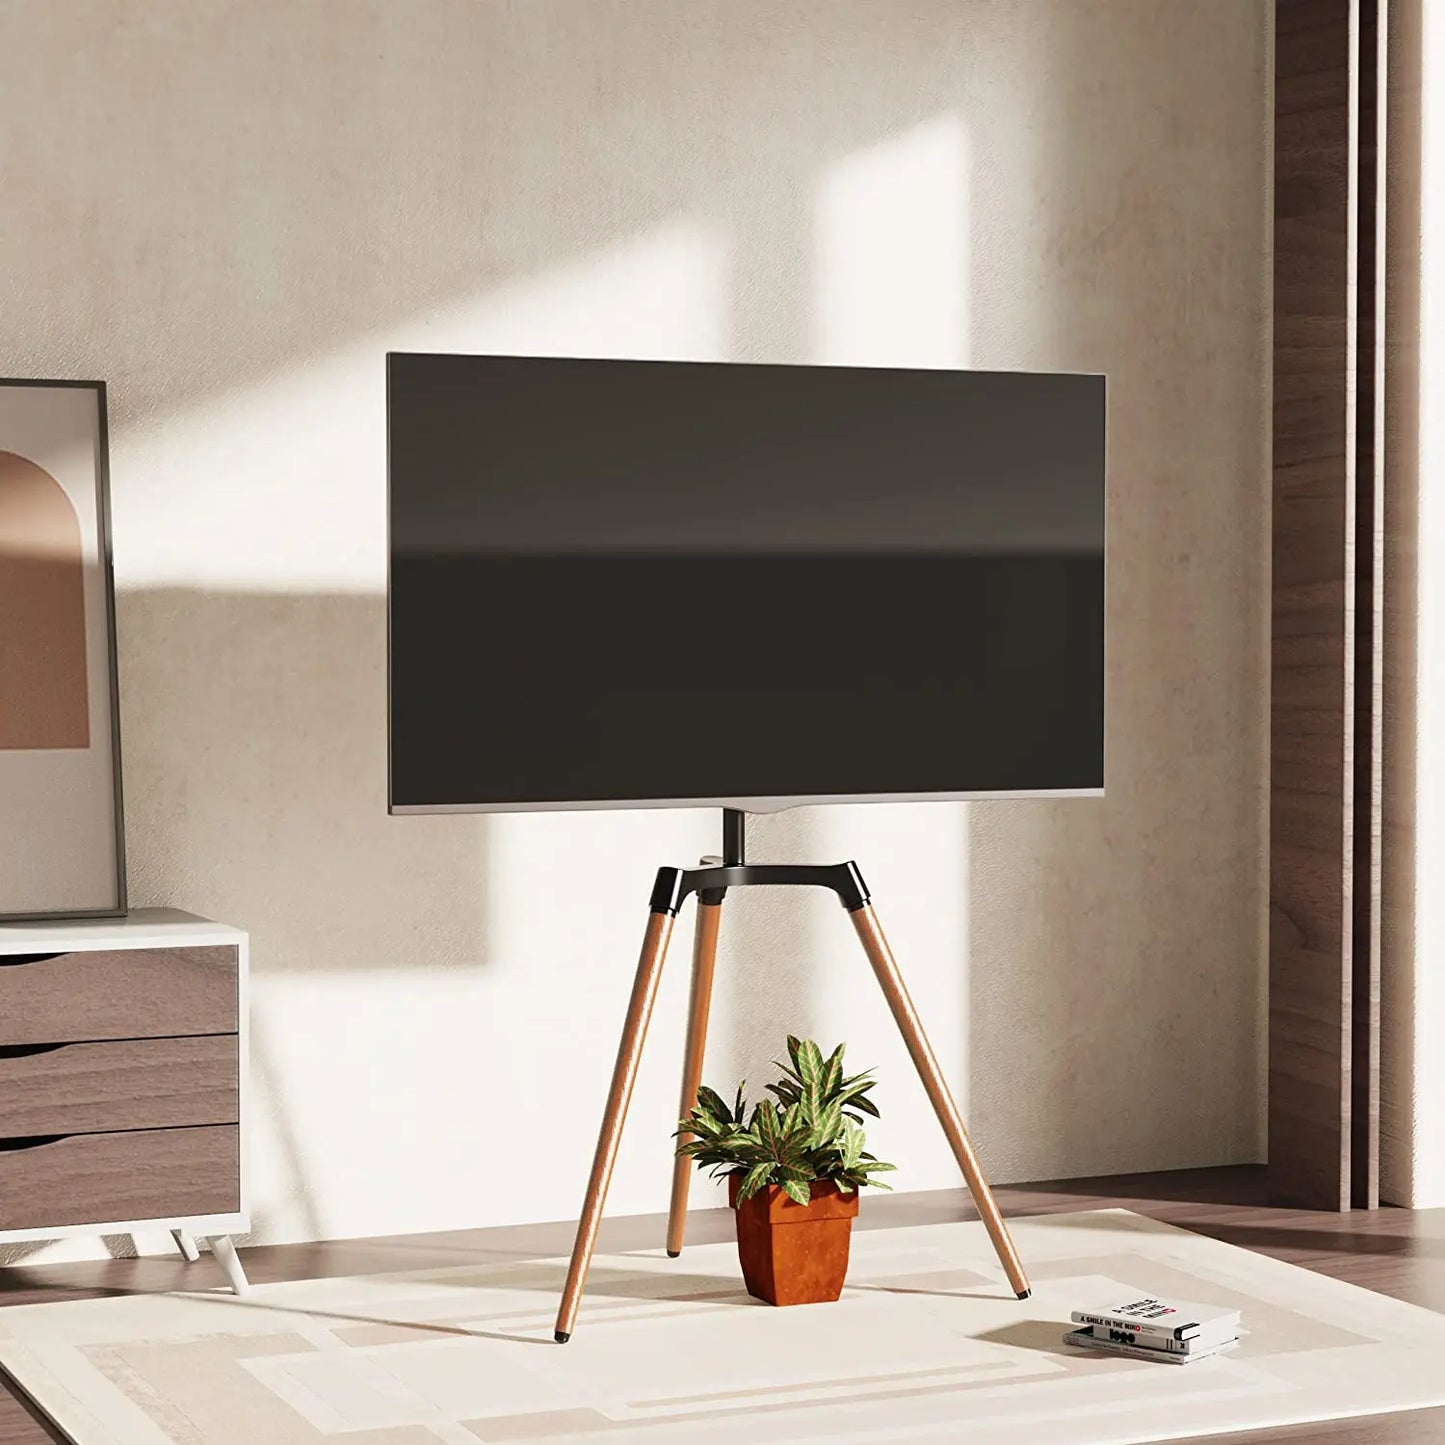 PUTORSEN® Artistic Easel TV Floor Stand for 50-65 Inch LED LCD Screen PUTORSEN